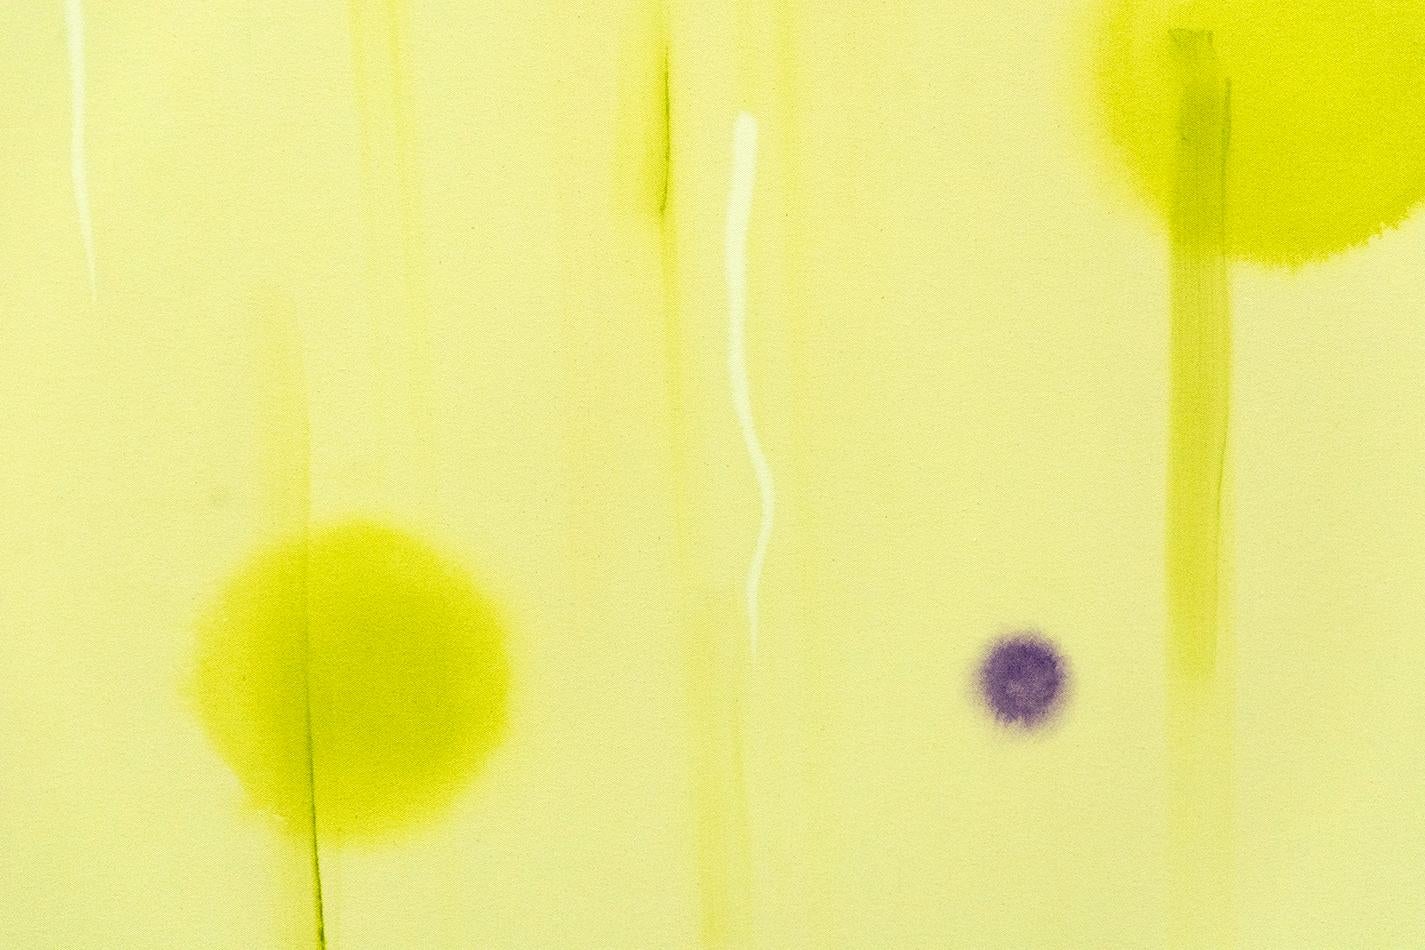 Des gouttes de violet équilibrent le mouvement des orbes jaunes lumineuses dans cette élégante composition chartreuse de Milly Ristvedt. 

